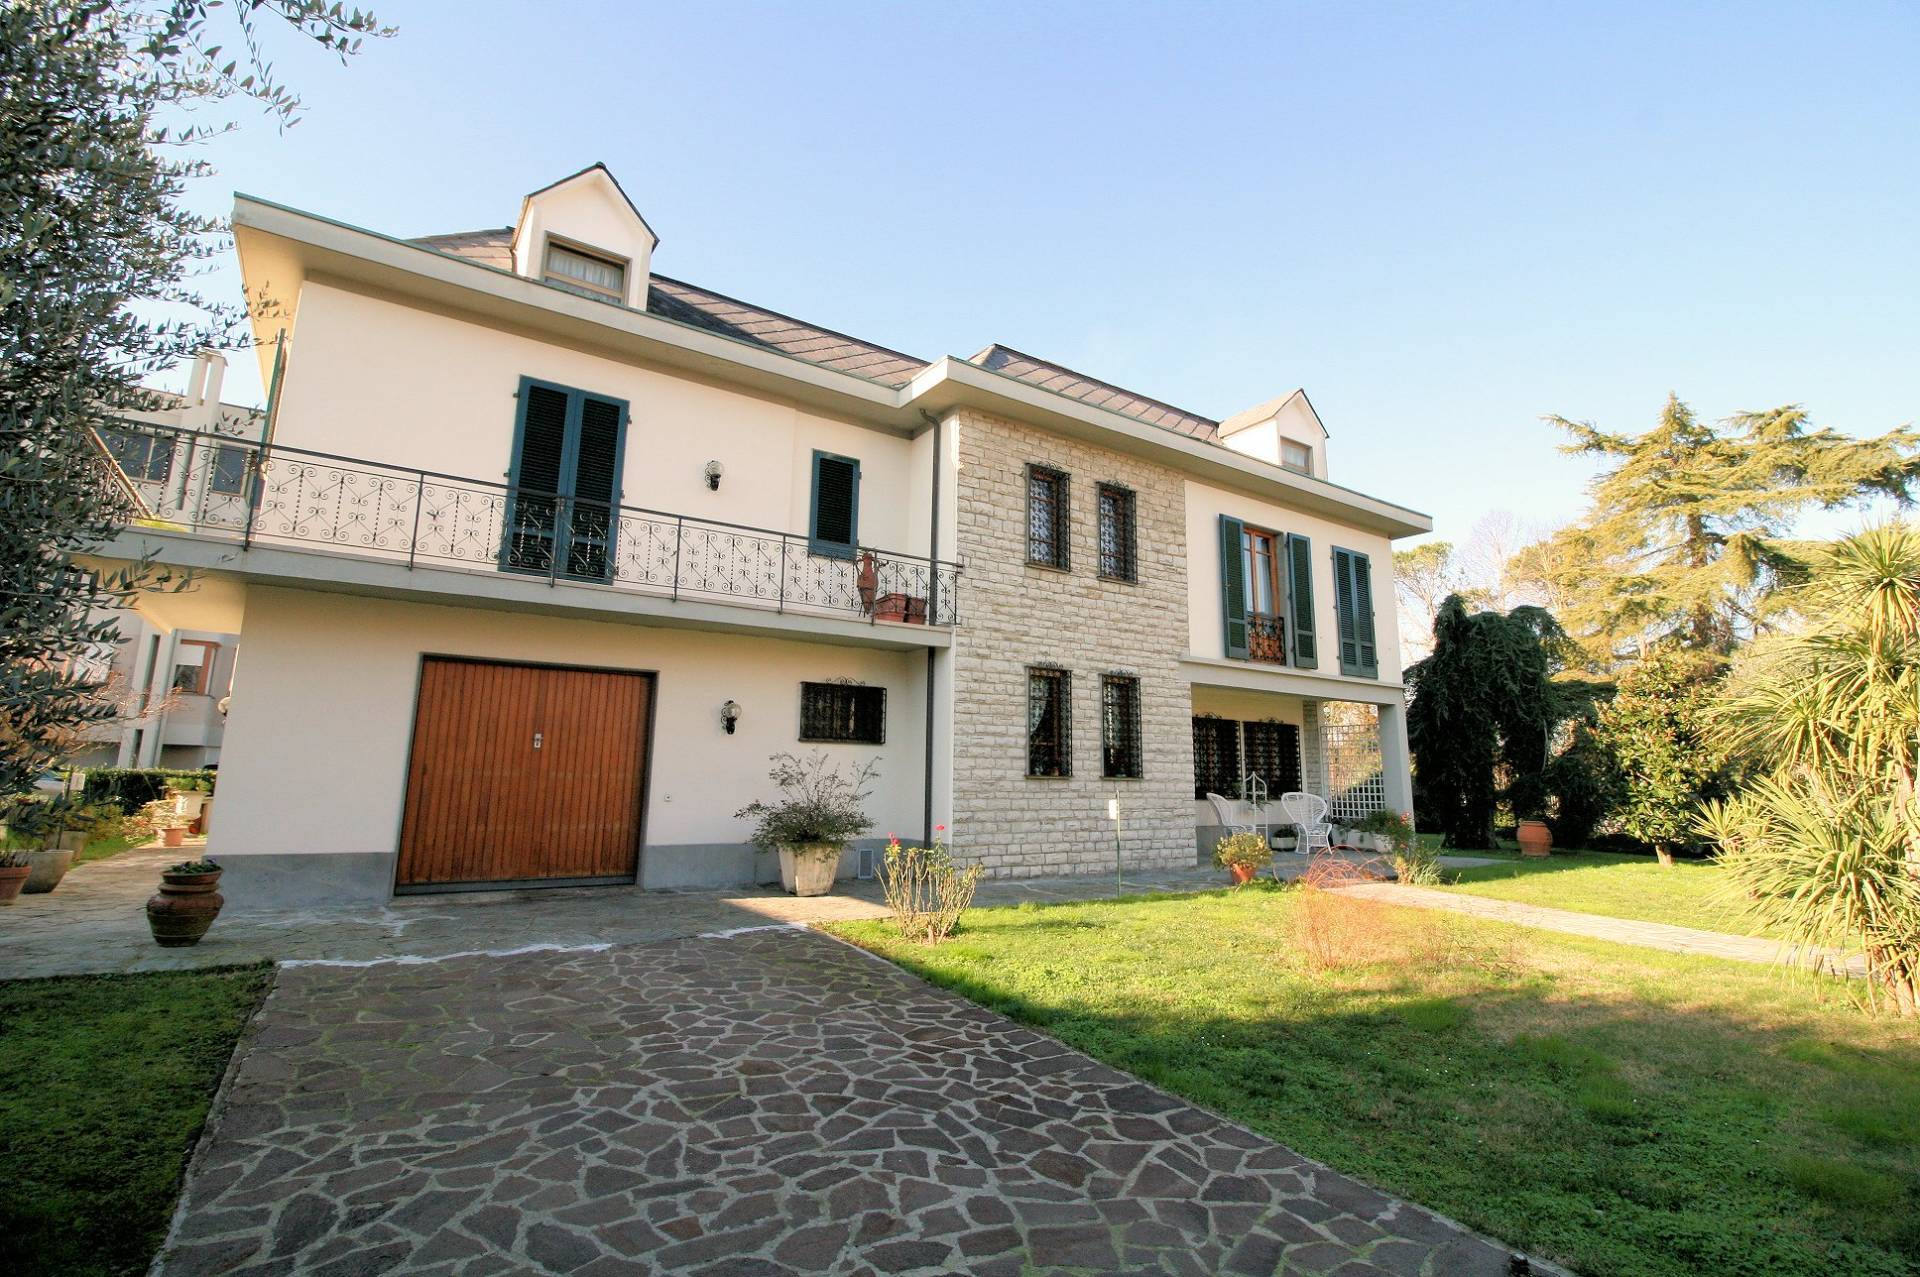 1310-Villa singola con ampio giardino-Santa Croce sull'Arno-1 Agenzia Immobiliare ASIP